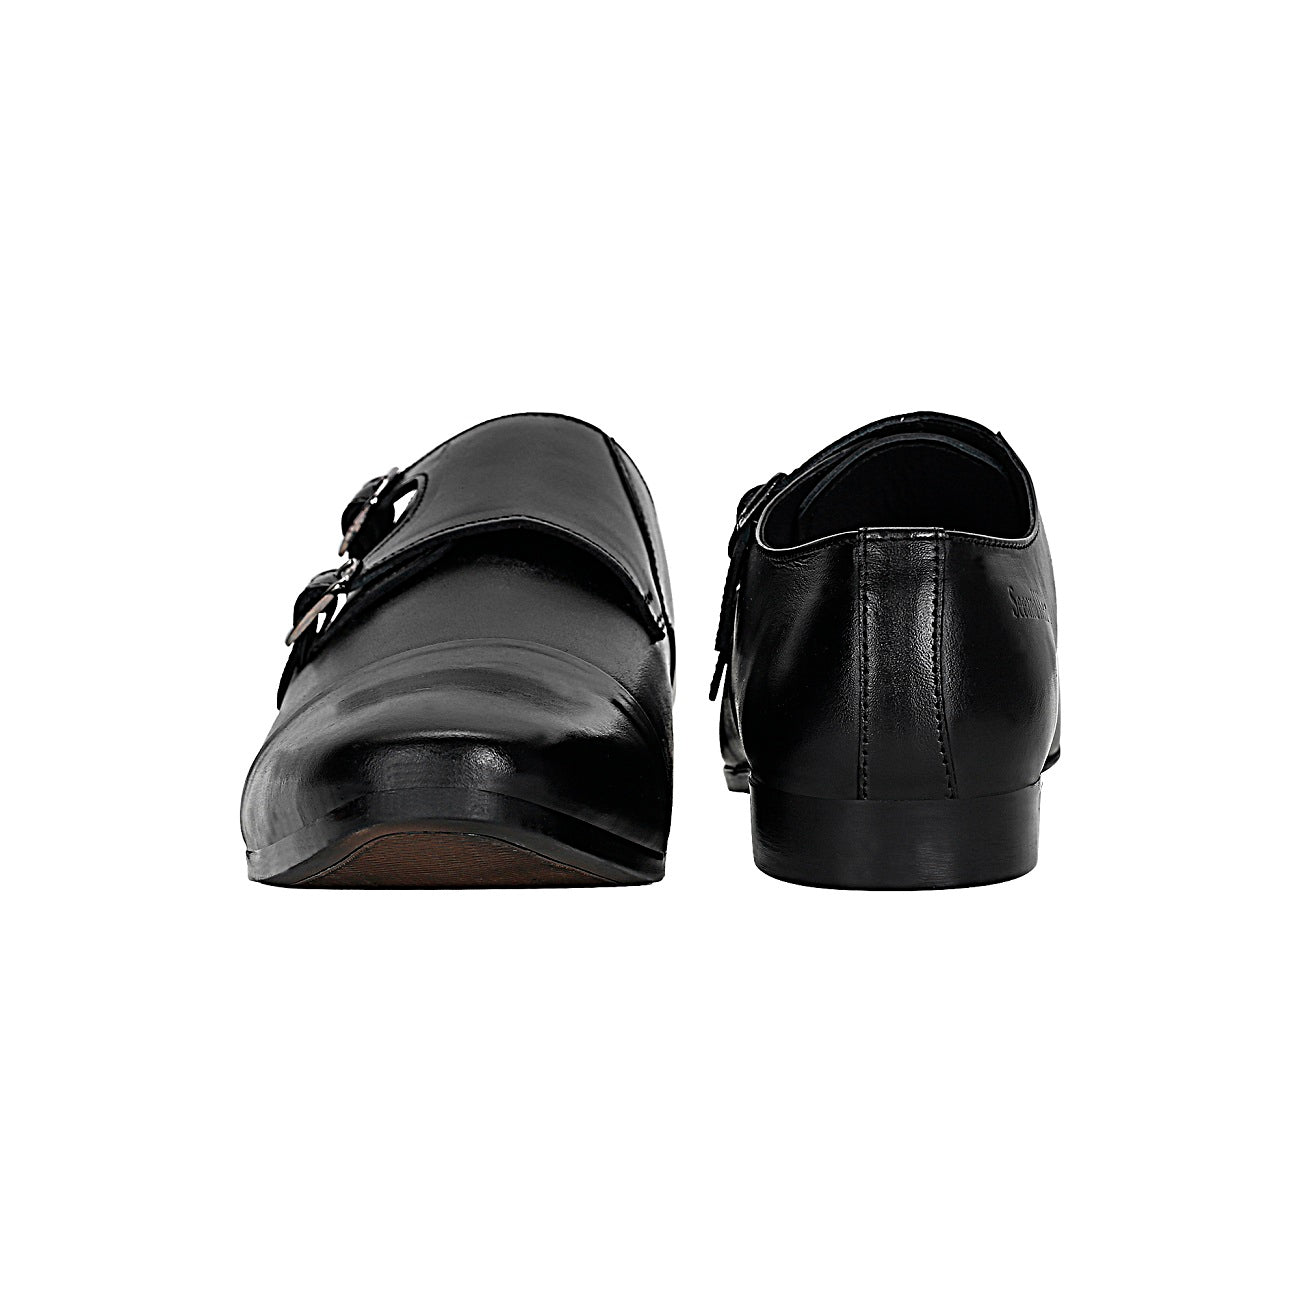 Double monk strap shoes - Defective